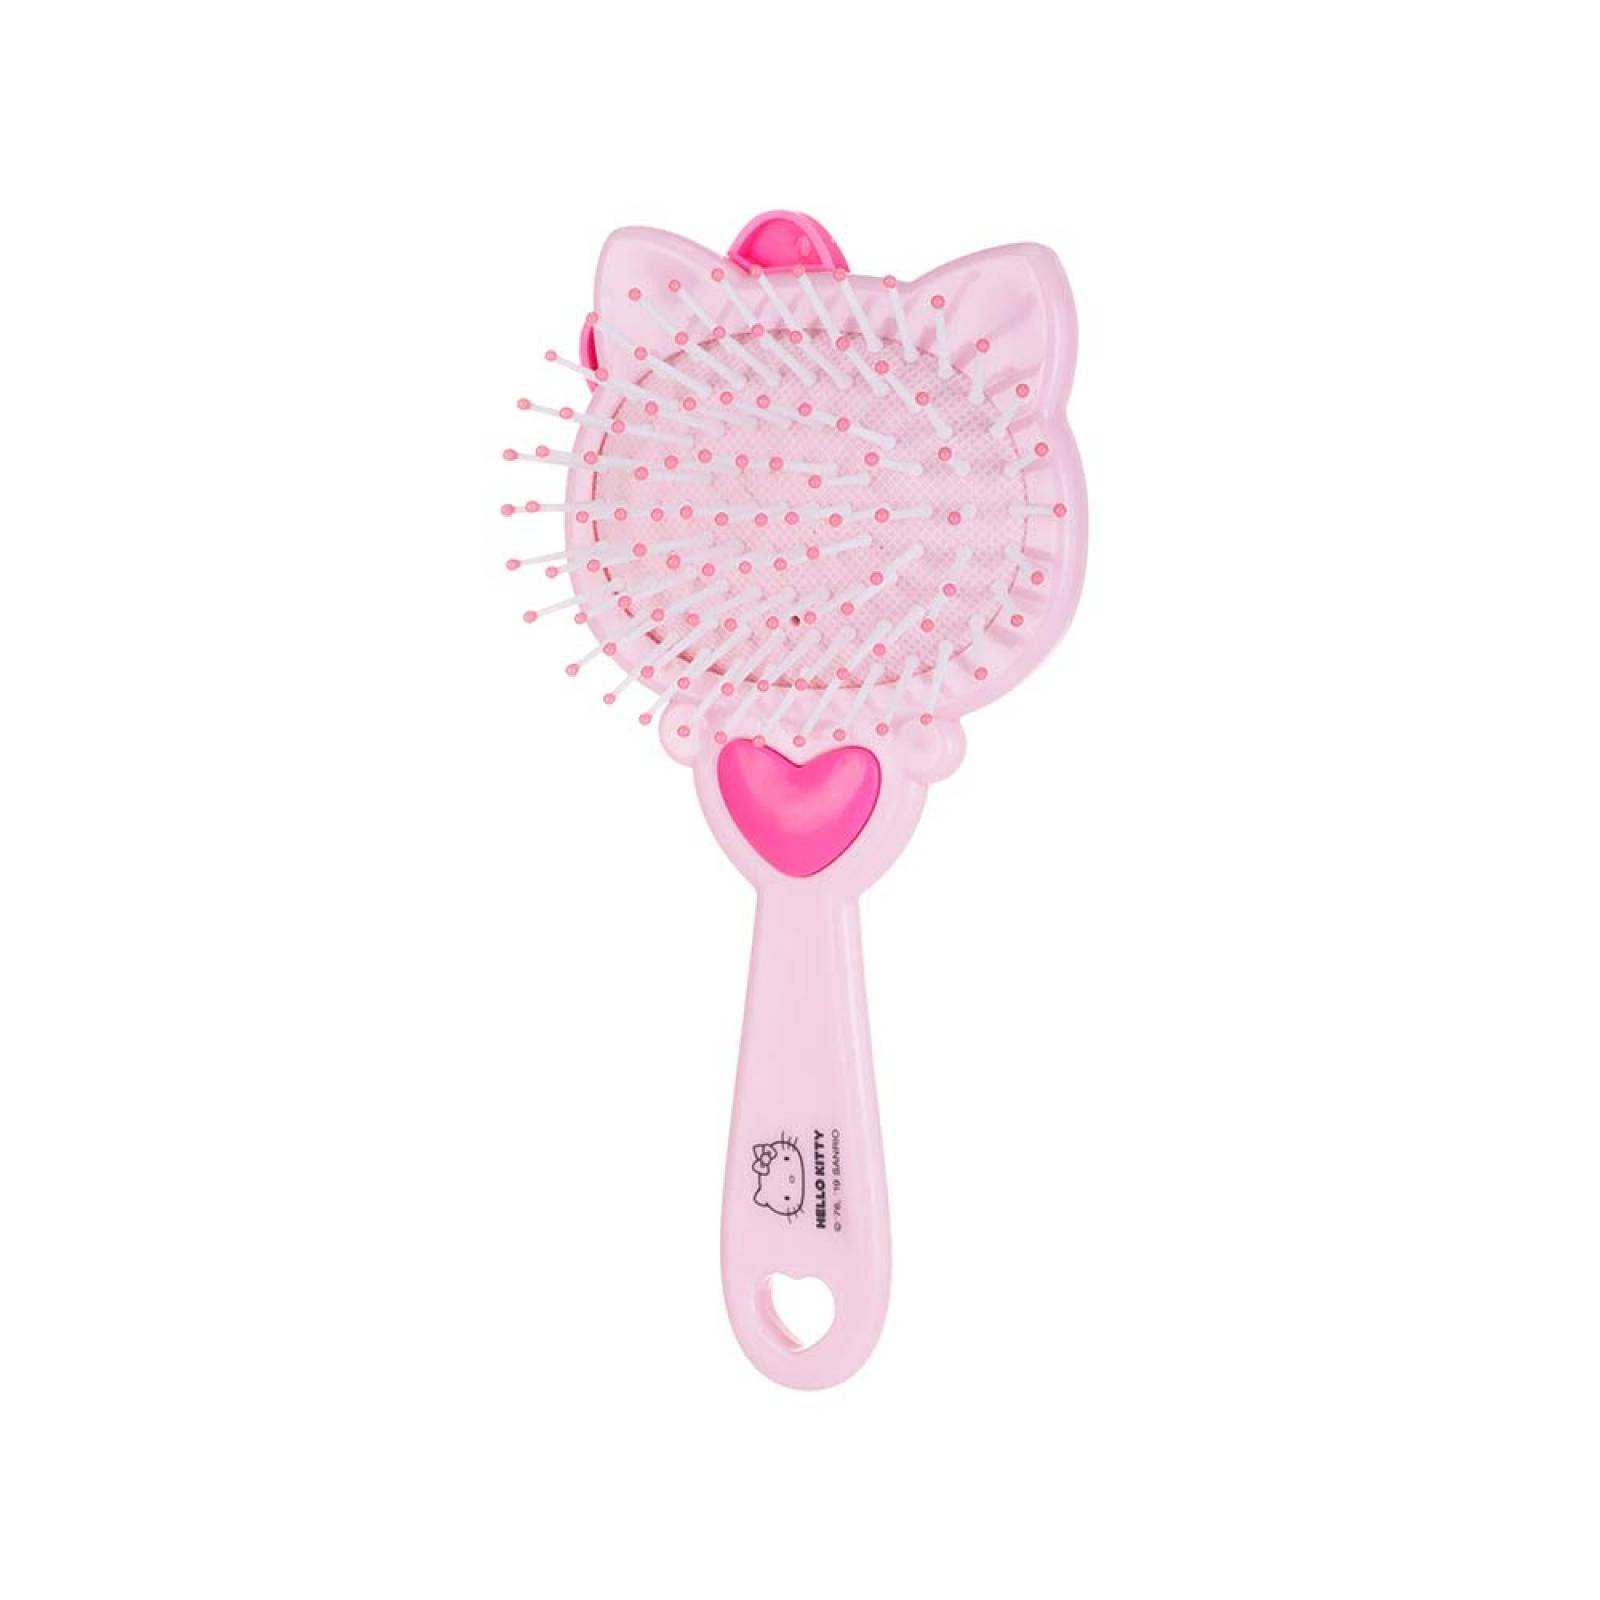 Cepillo masajeador, Princesa Hello Kitty - Sanrio